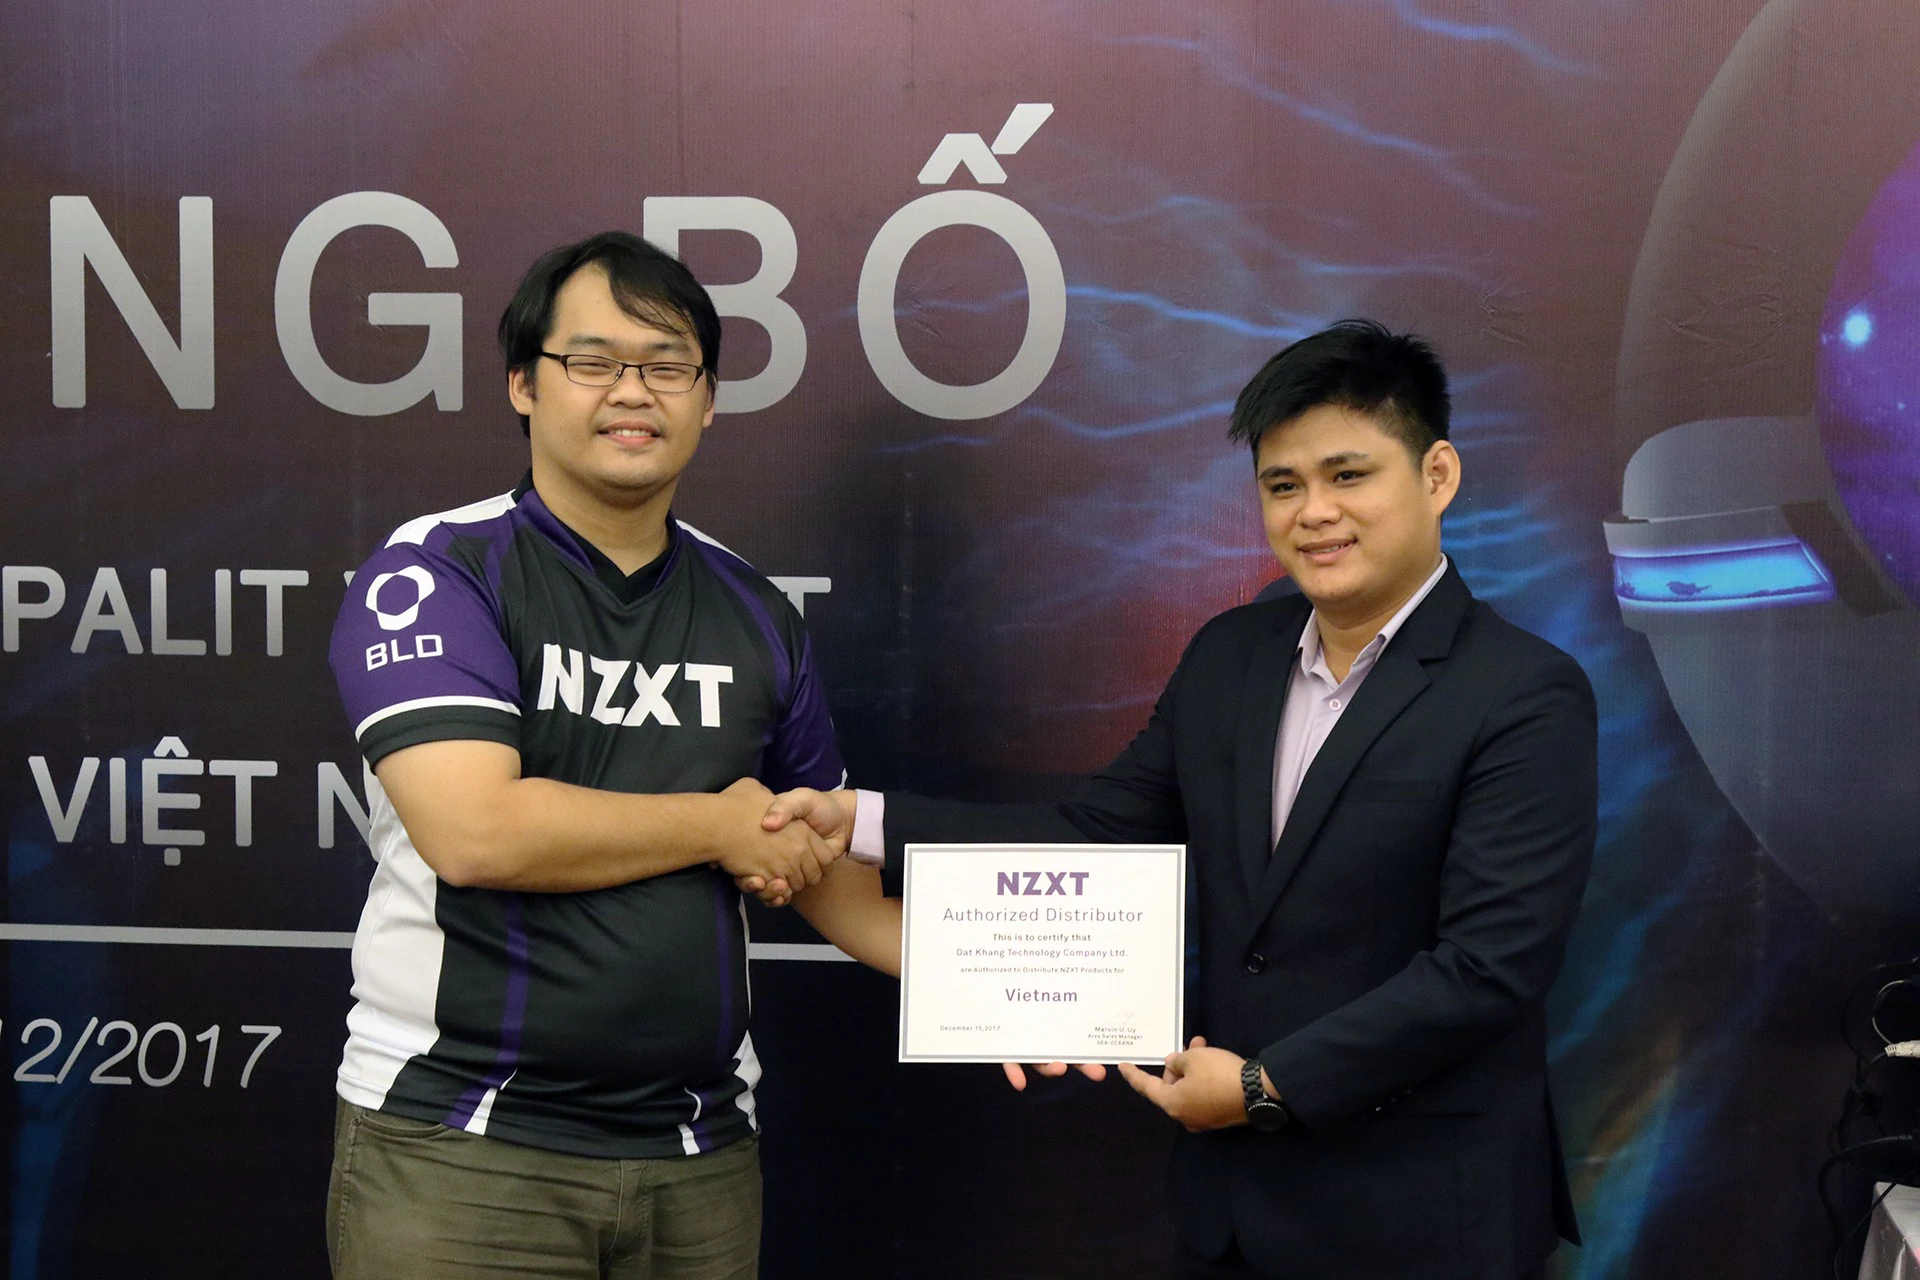  Ông Marvin Uy – Giám đốc Bán hàng (khu vực Đông Nam Á) trao giấy chứng nhận NPP Độc quyền tại thị trường Việt Nam cho ông Long Nguyễn Quốc Hùng 